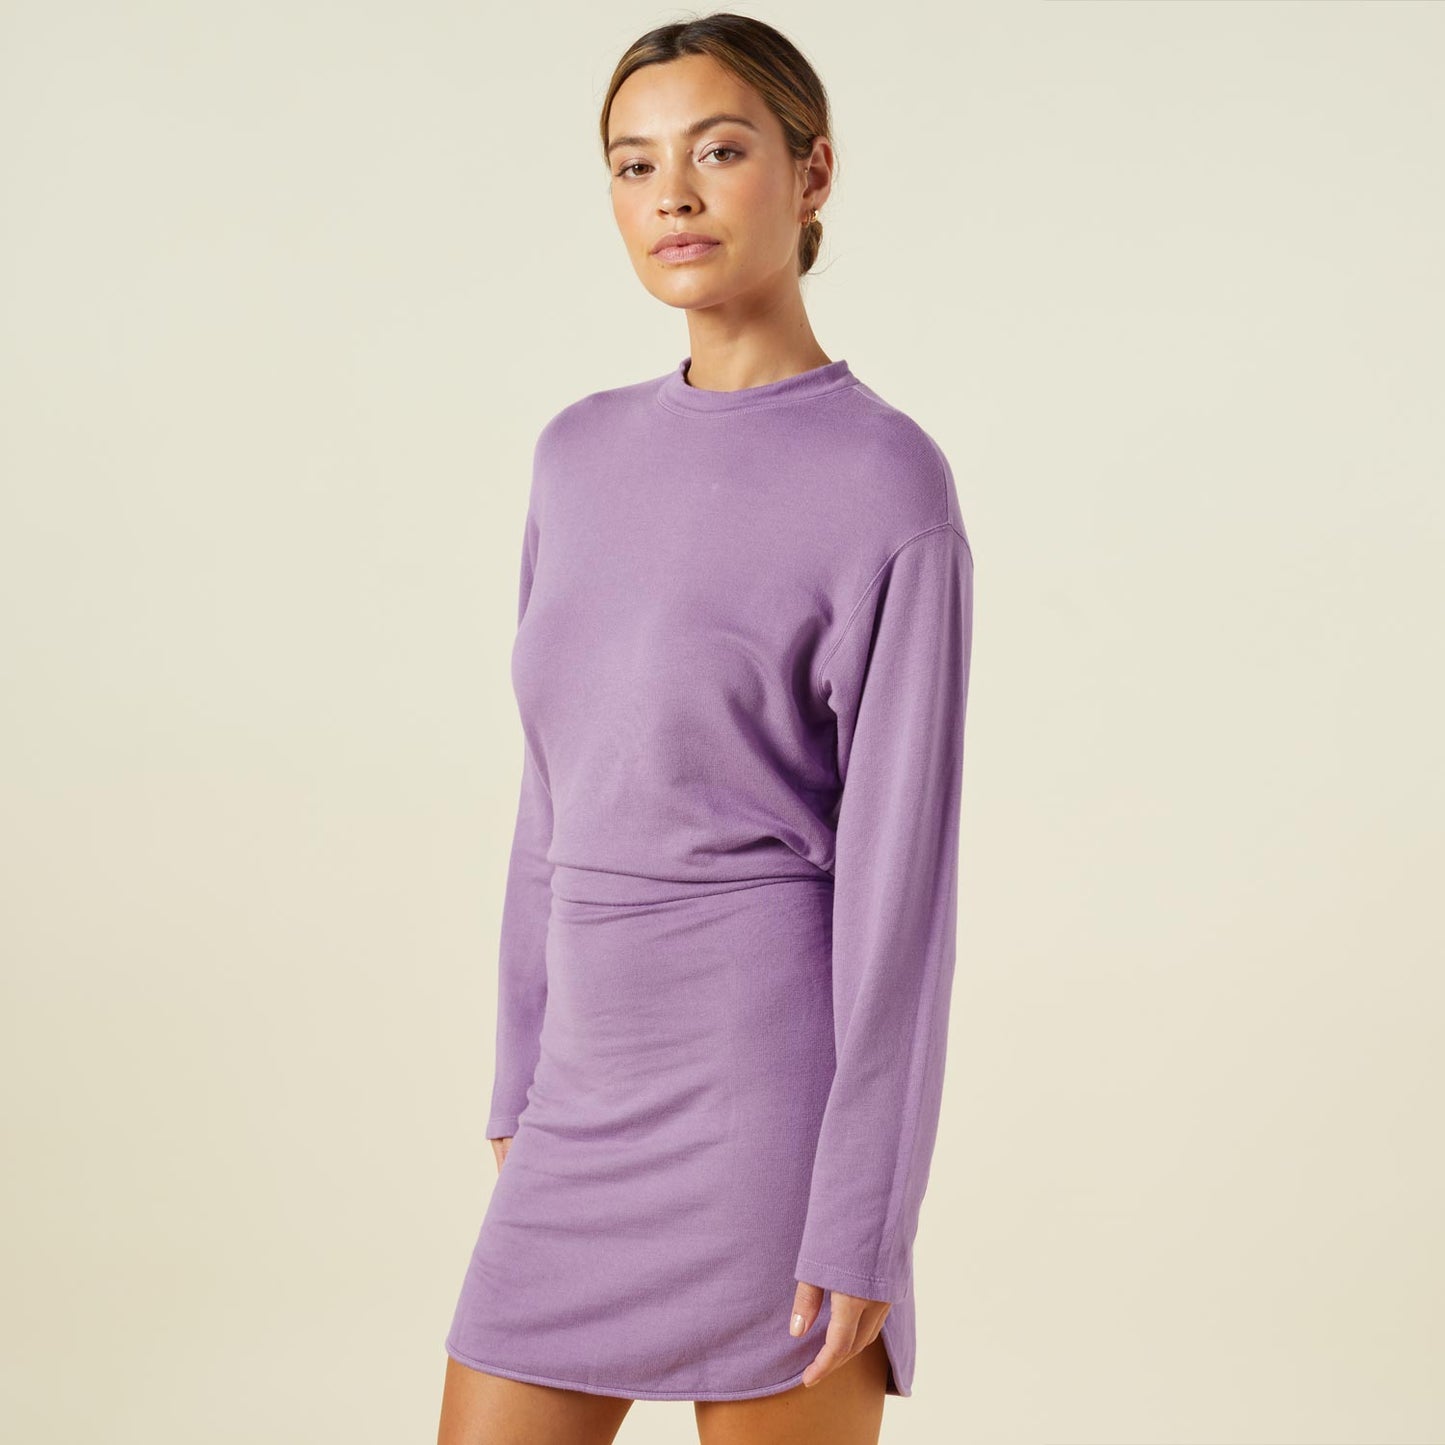 Side view of model wearing the supersoft fleece sweatshirt dress in aster purple.